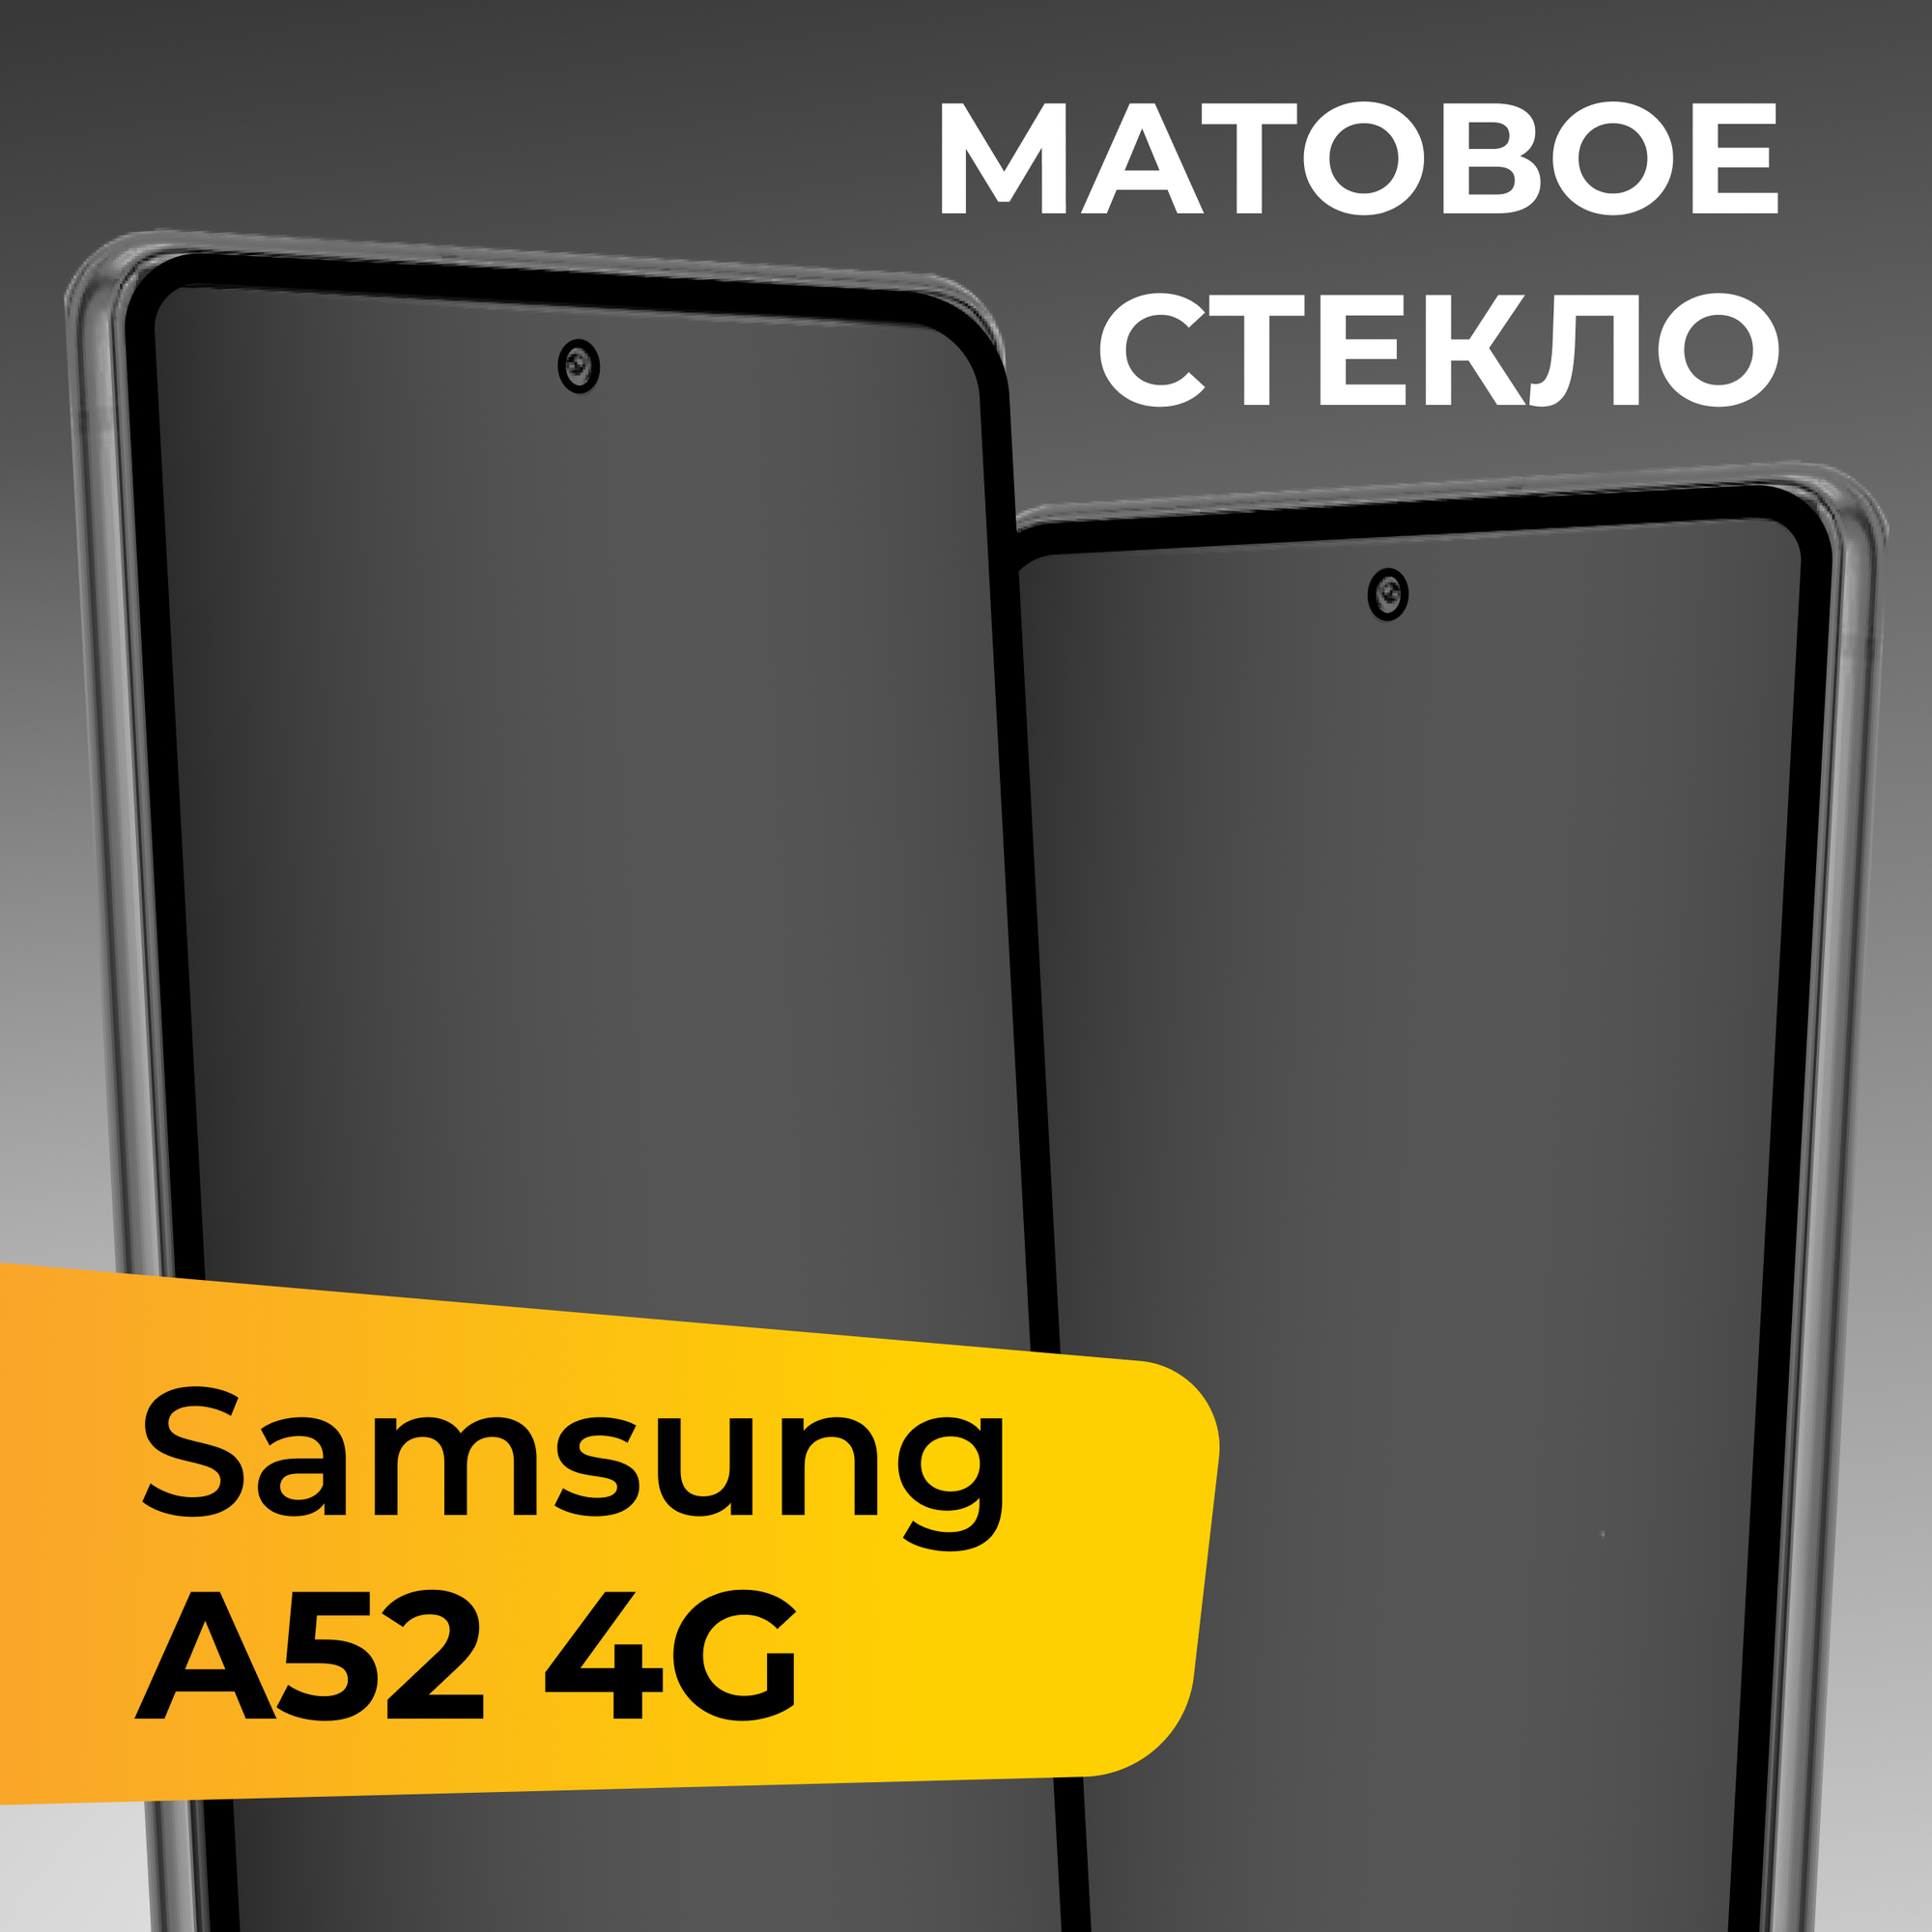 Матовое защитное стекло для телефона Samsung Galaxy A52 4G / Противоударное закаленное стекло на весь экран для смартфона Самсунг Галакси А52 4Г